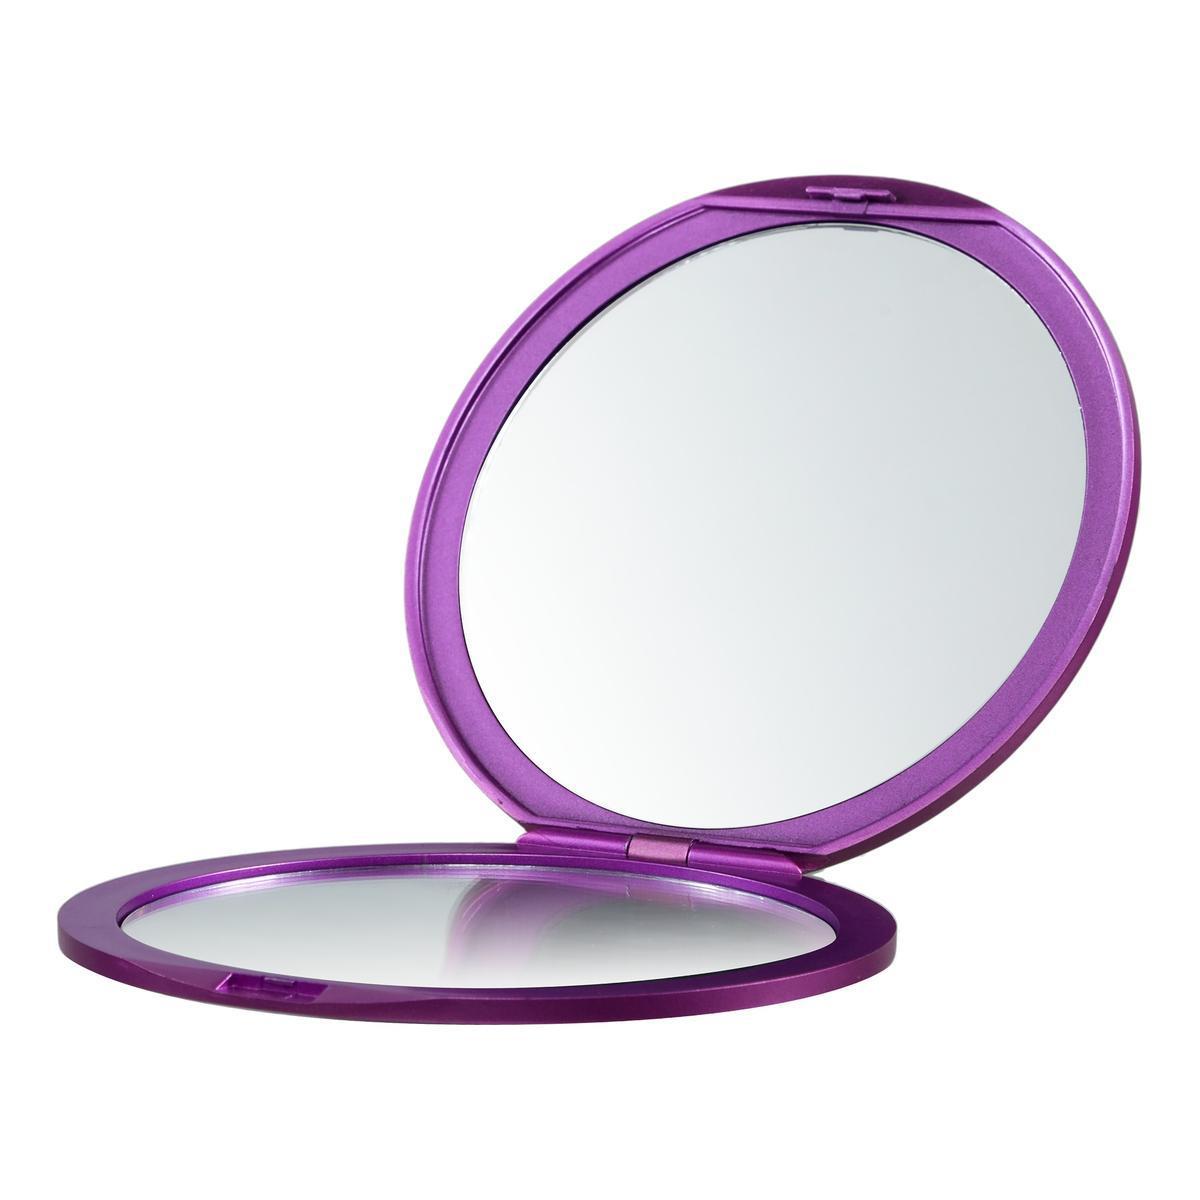 Miroir de sac double-face - ø 12.2 x H 1 cm - Différents coloris - Noir, blanc, rose - COSMETIC CLUB